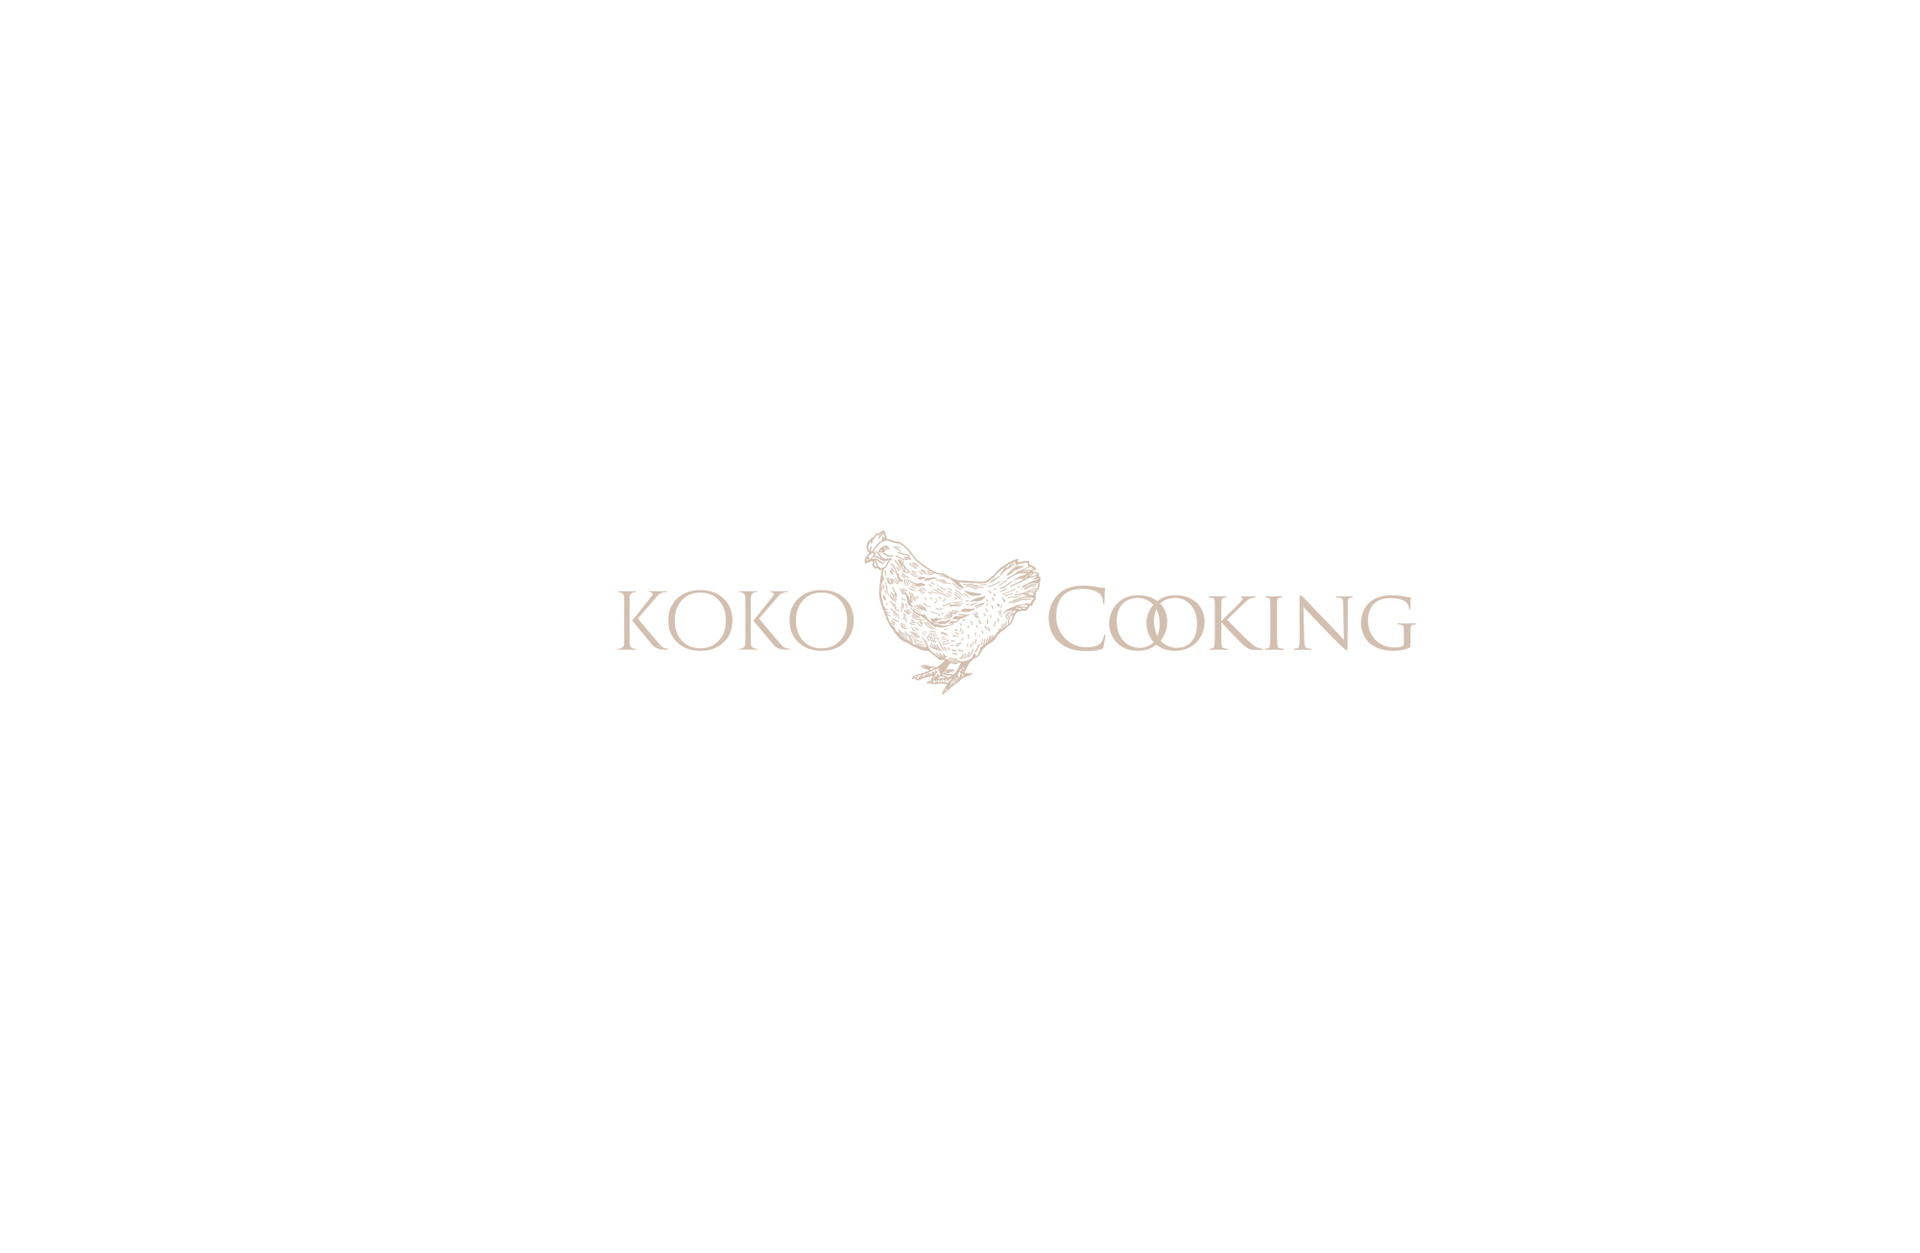 Koko & Cooking